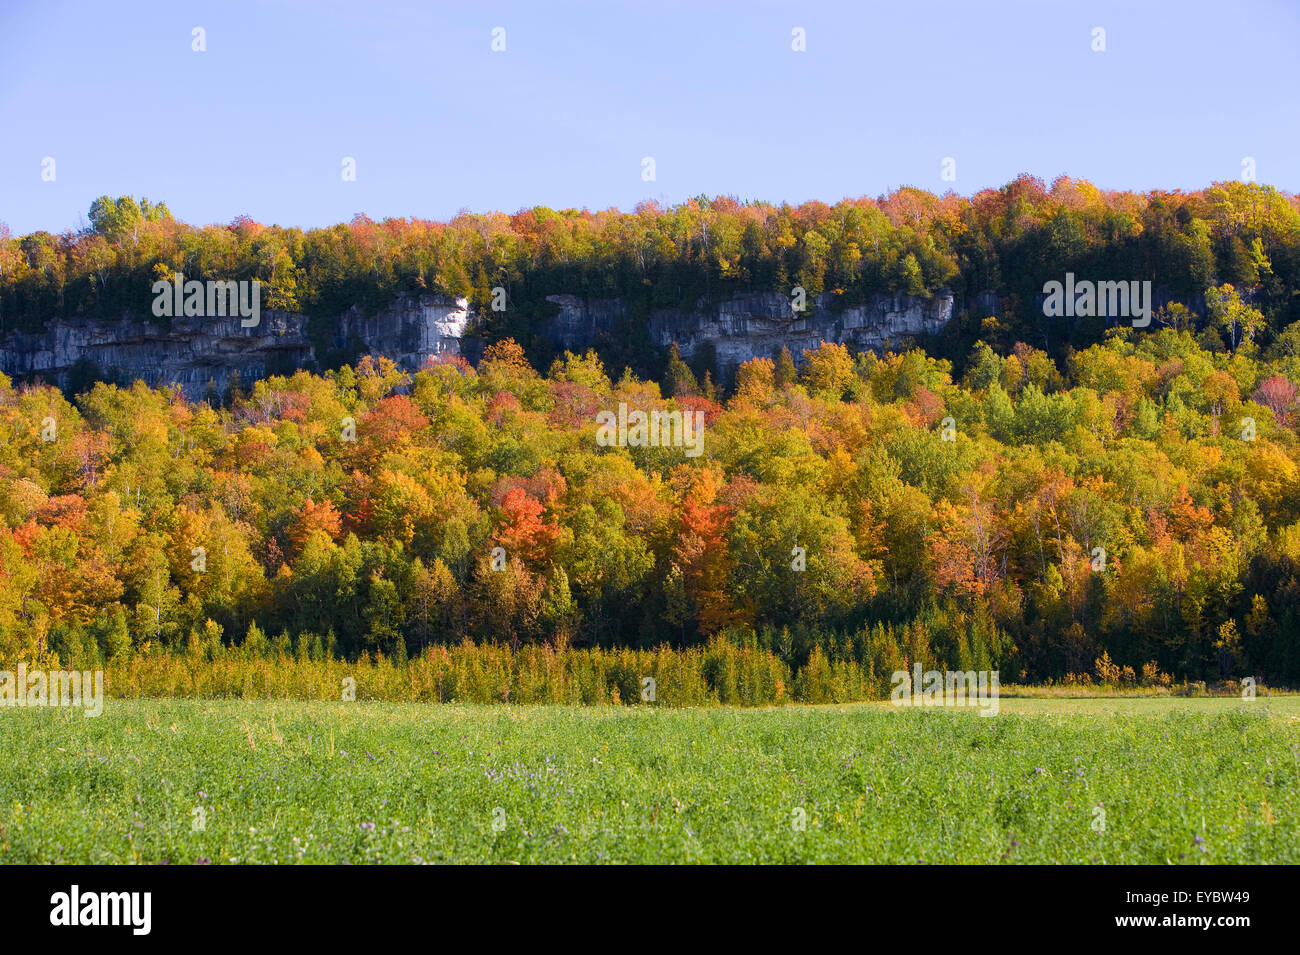 América del Norte, Canadá, Ontario, cerca de la península de Bruce "Wiarton' 'Niagara Escarpment' nombrado en 1990 por la UNESCO como Reservas Mundiales de Biosfera Foto de stock